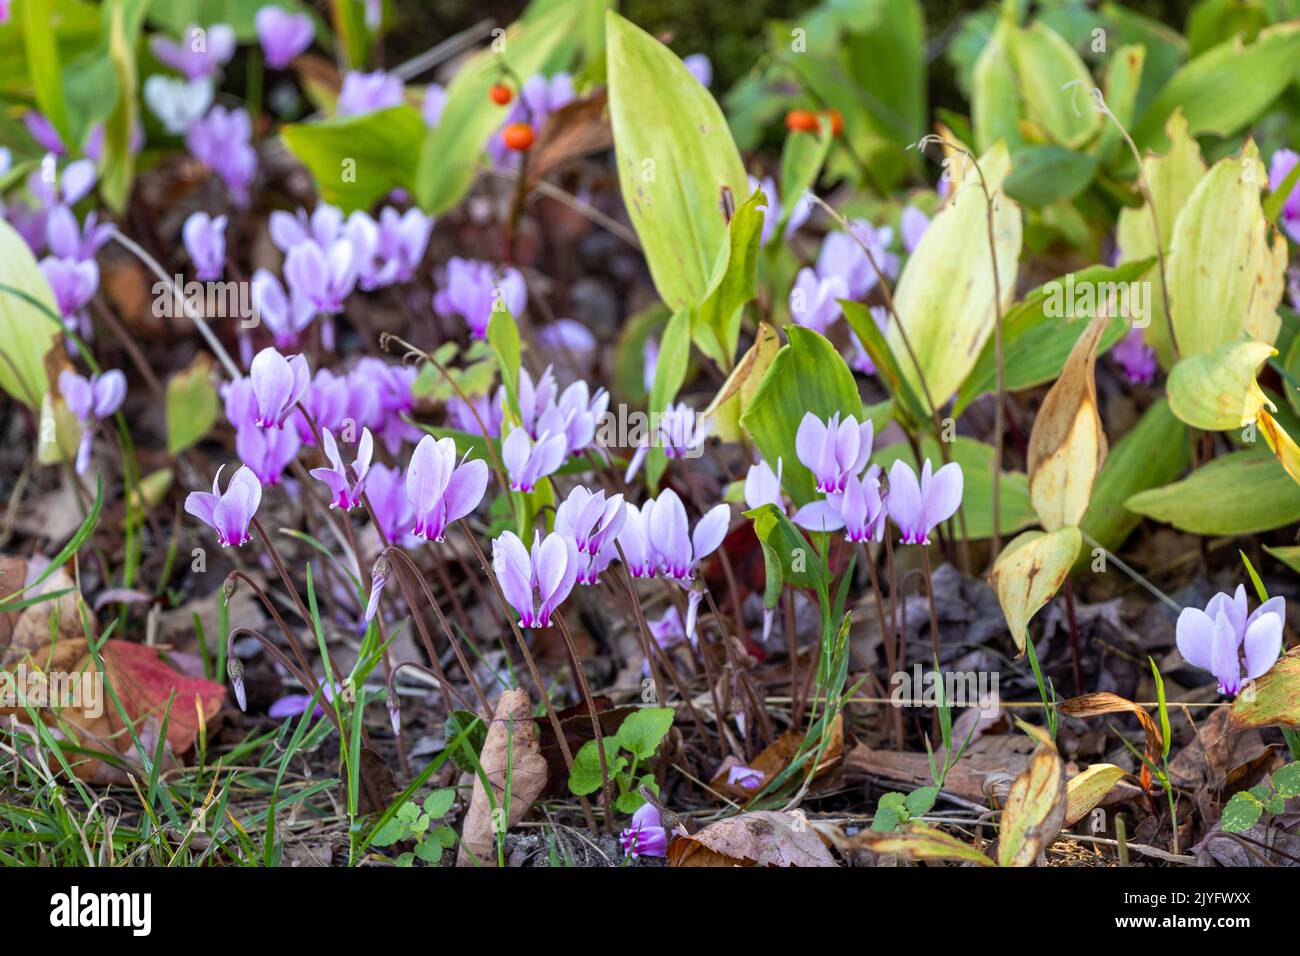 purple cyclamen flowers in autumn garden Stock Photo